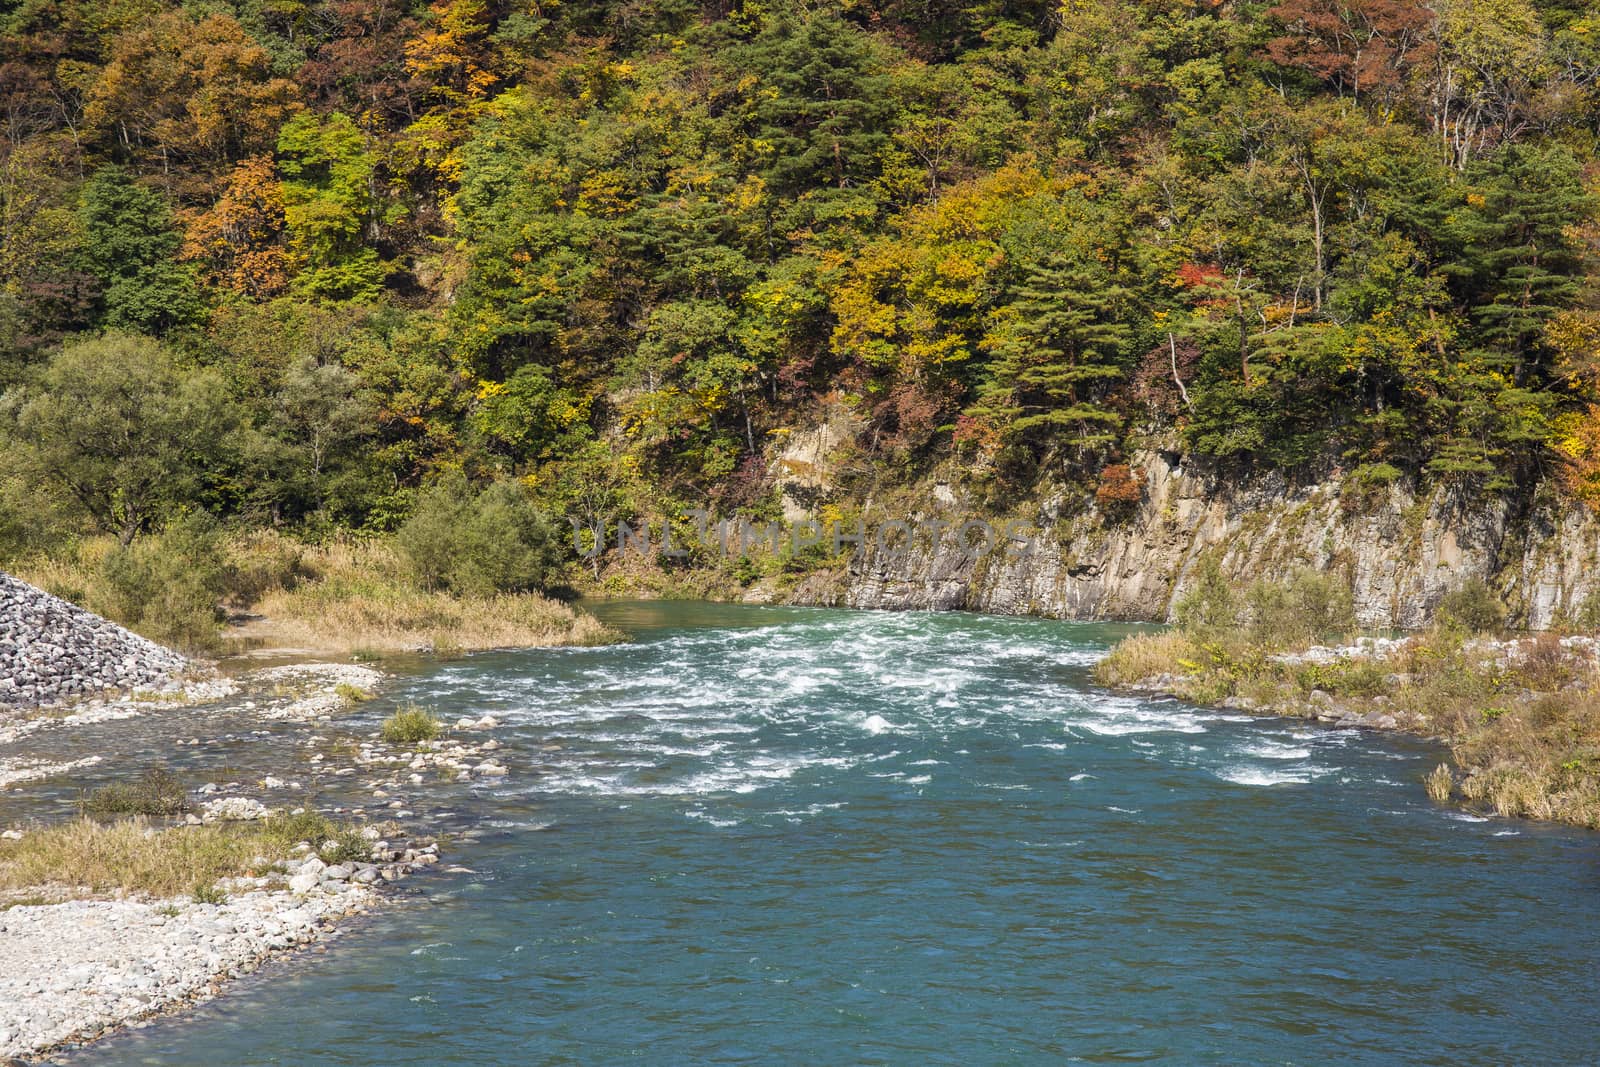 River front of shirakawa-go Japan